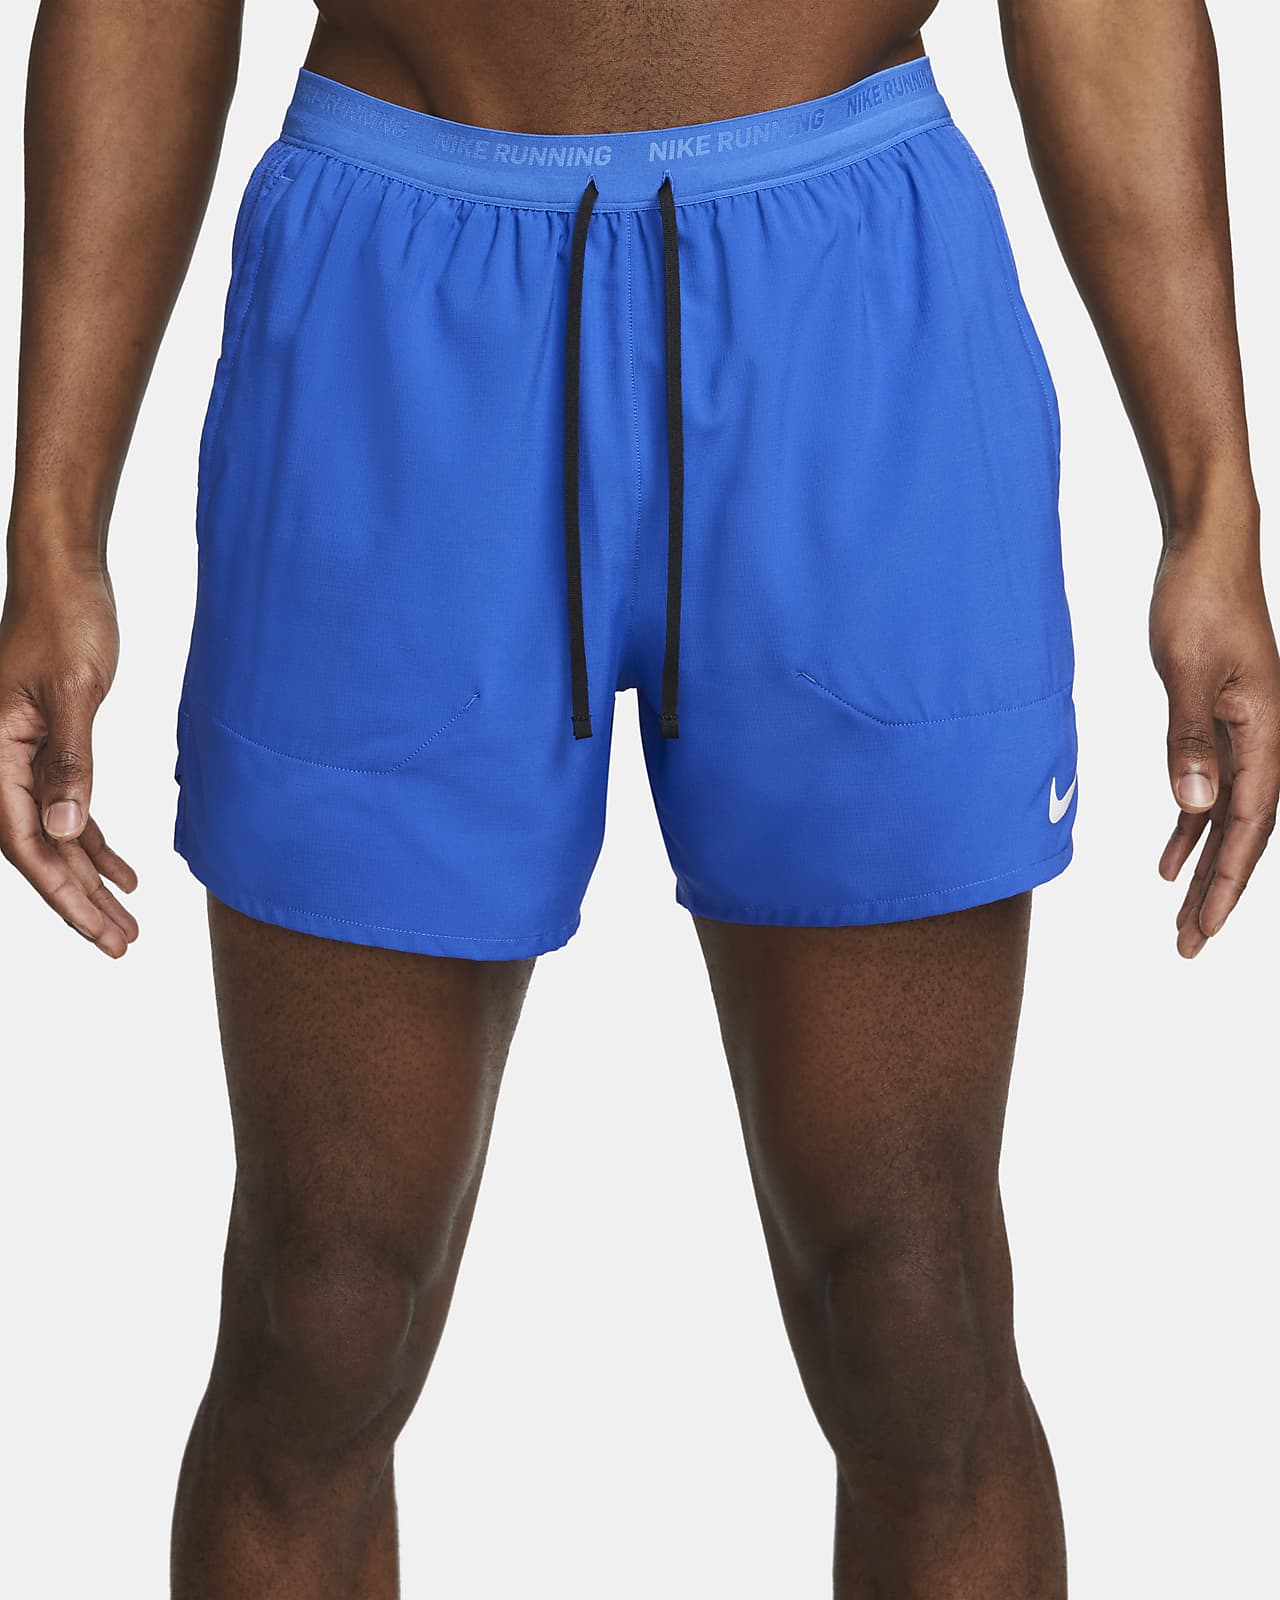 Shorts de running con forro de ropa interior Dri-FIT 12.5 cm para Nike Nike.com